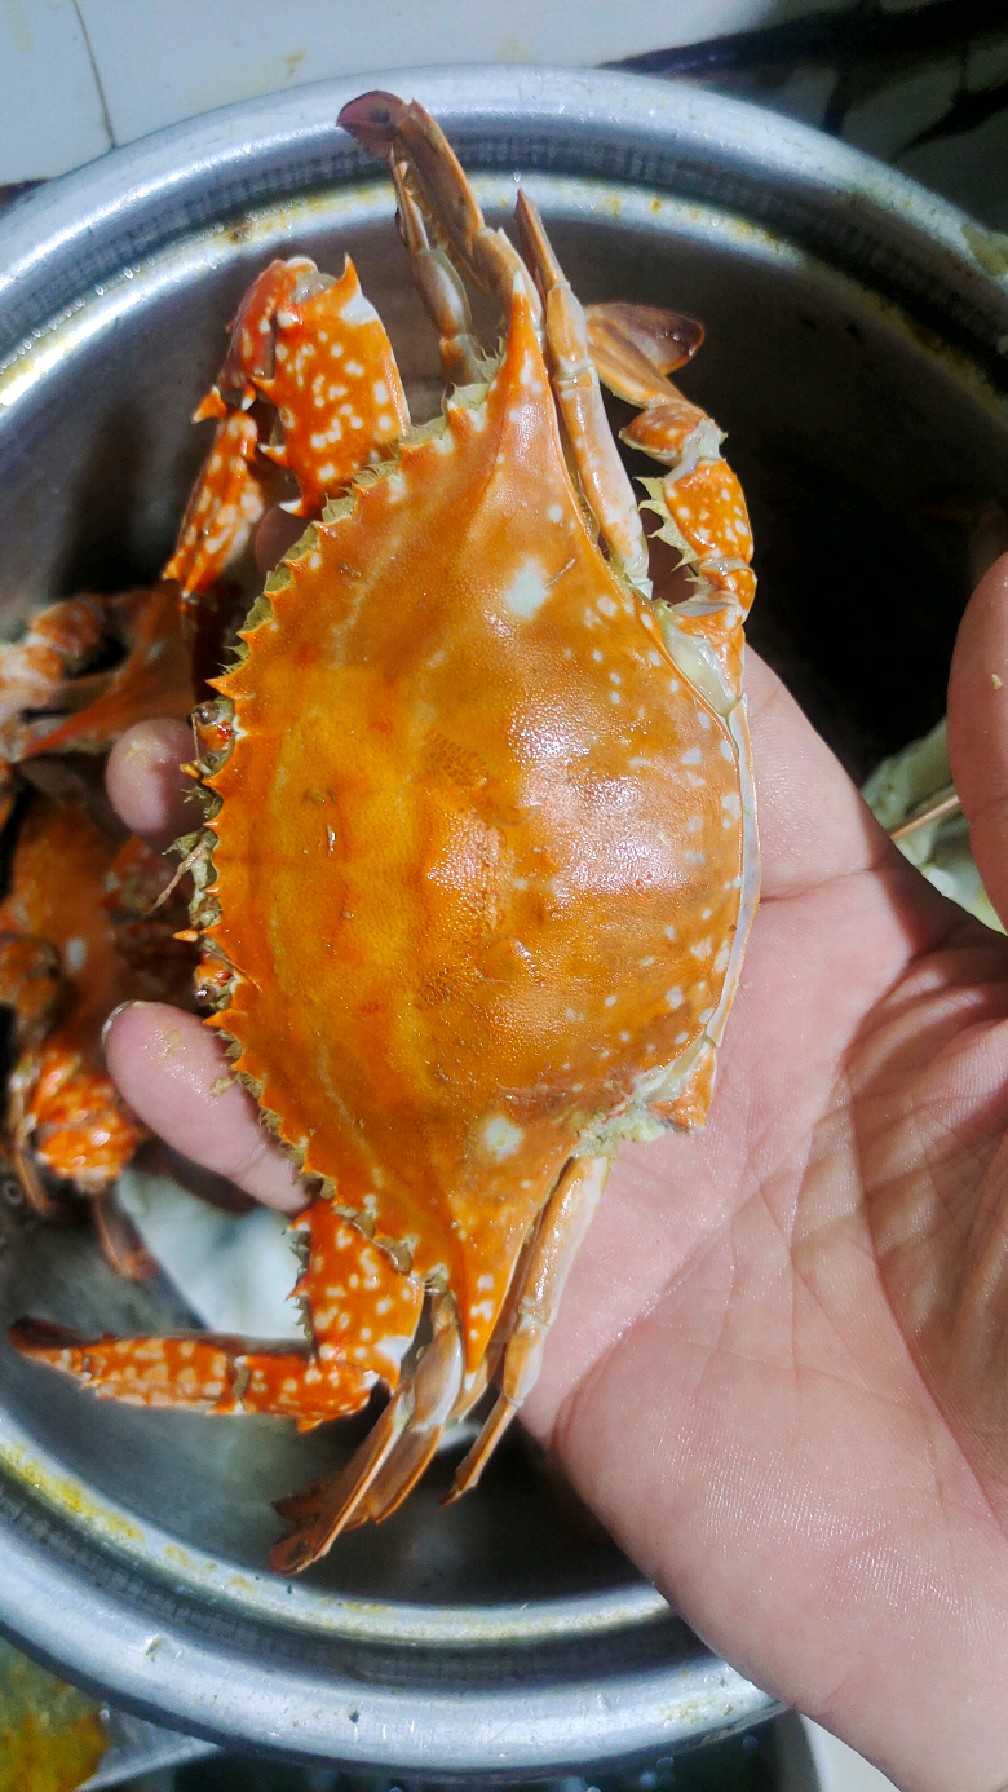 巴掌大的梭子蟹才十块钱一斤,开海了螃蟹也便宜了好多